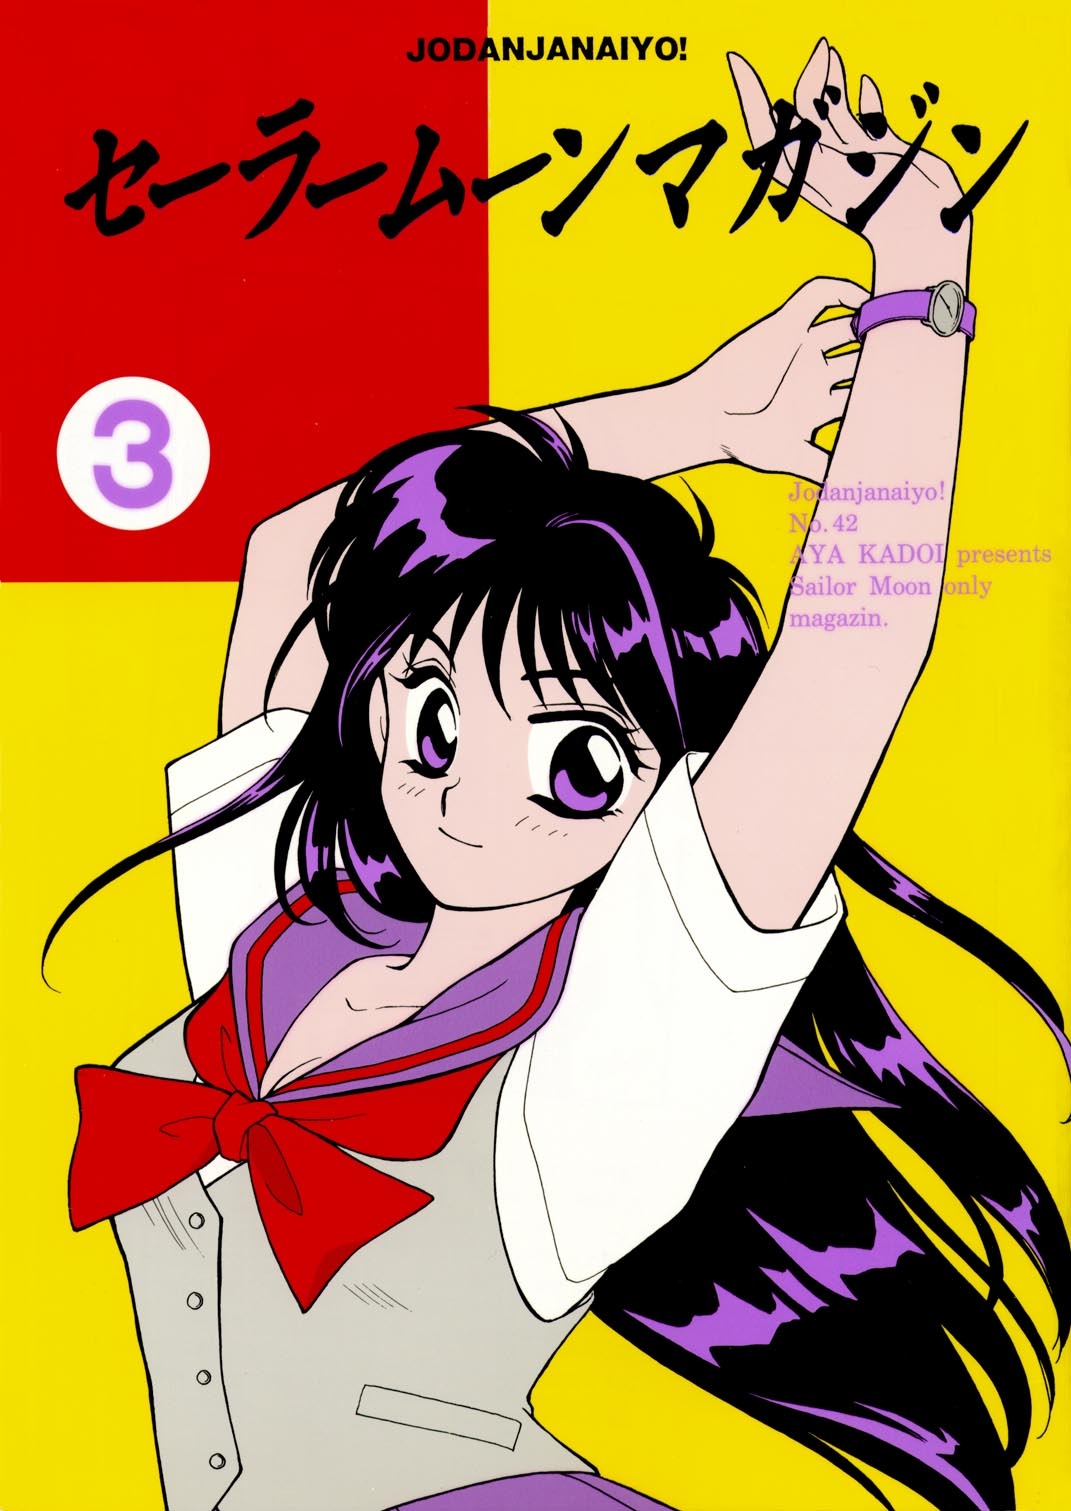 [Joudan Janai Yo! (Kadoi Aya)] Sailor Moon Magazine 3 (Bishoujo Senshi Sailor Moon) 0